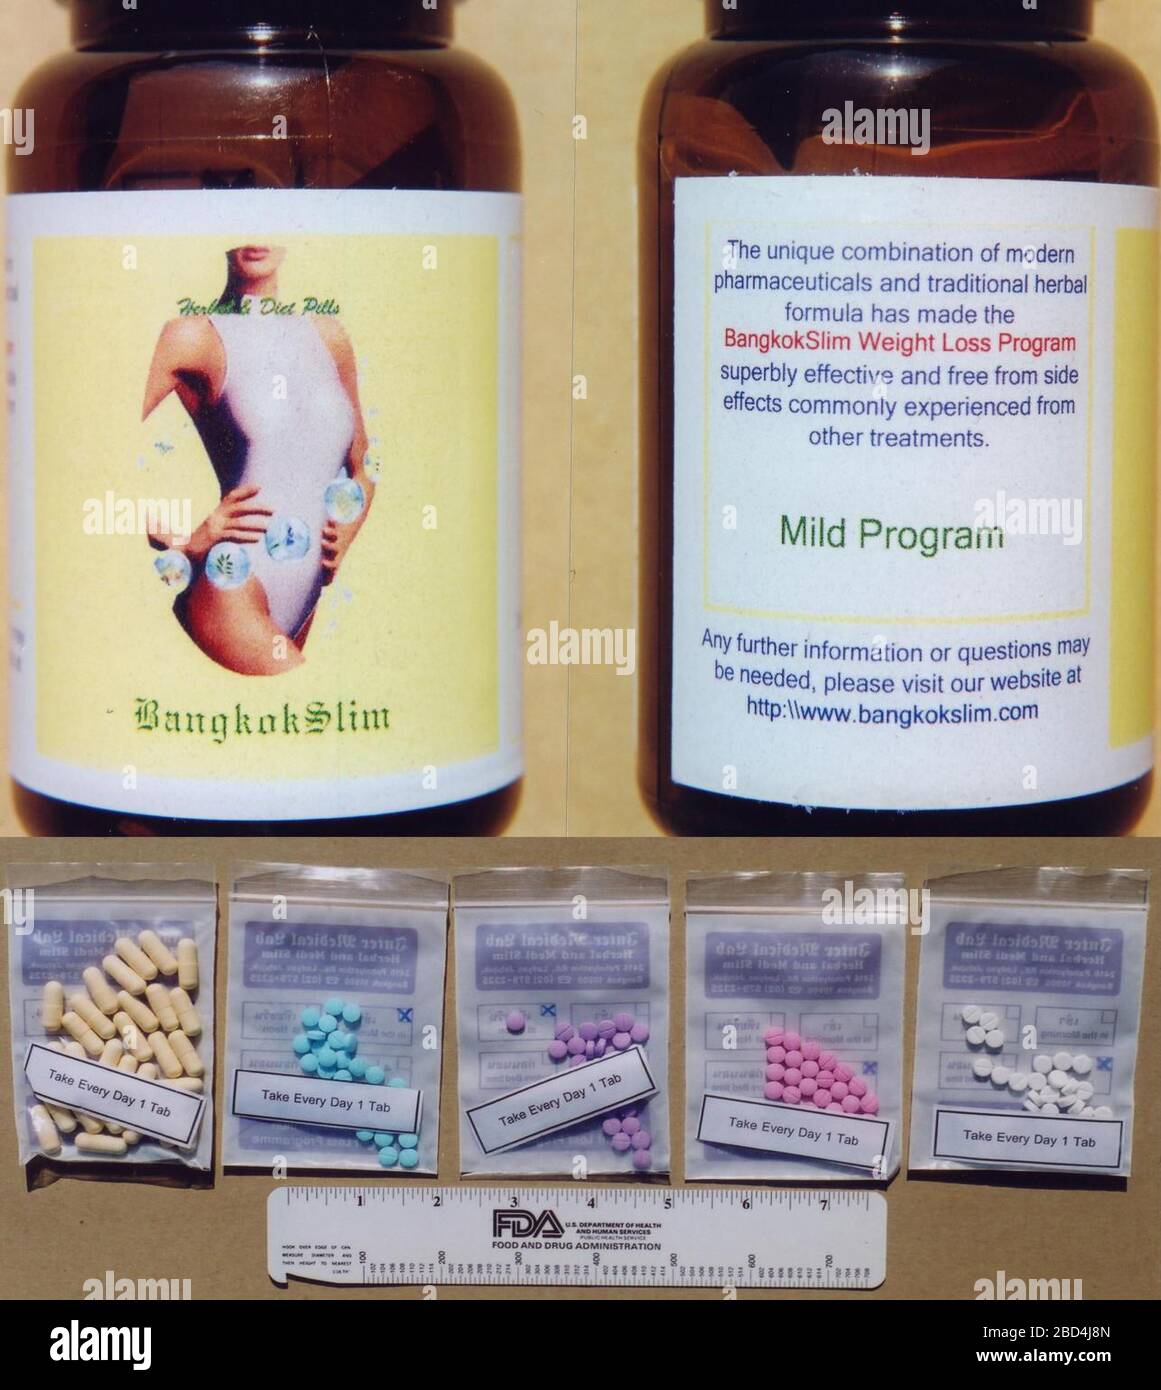 Nel 2000 un produttore tailandese ha iniziato a vendere come integratori alimentari pillole di dieta con potenti ma non etichettati farmaci, tra cui fenfluramina e fentermina, e FDA alla fine ha aggiunto questo e prodotti simili a un avviso di importazione. Foto Stock